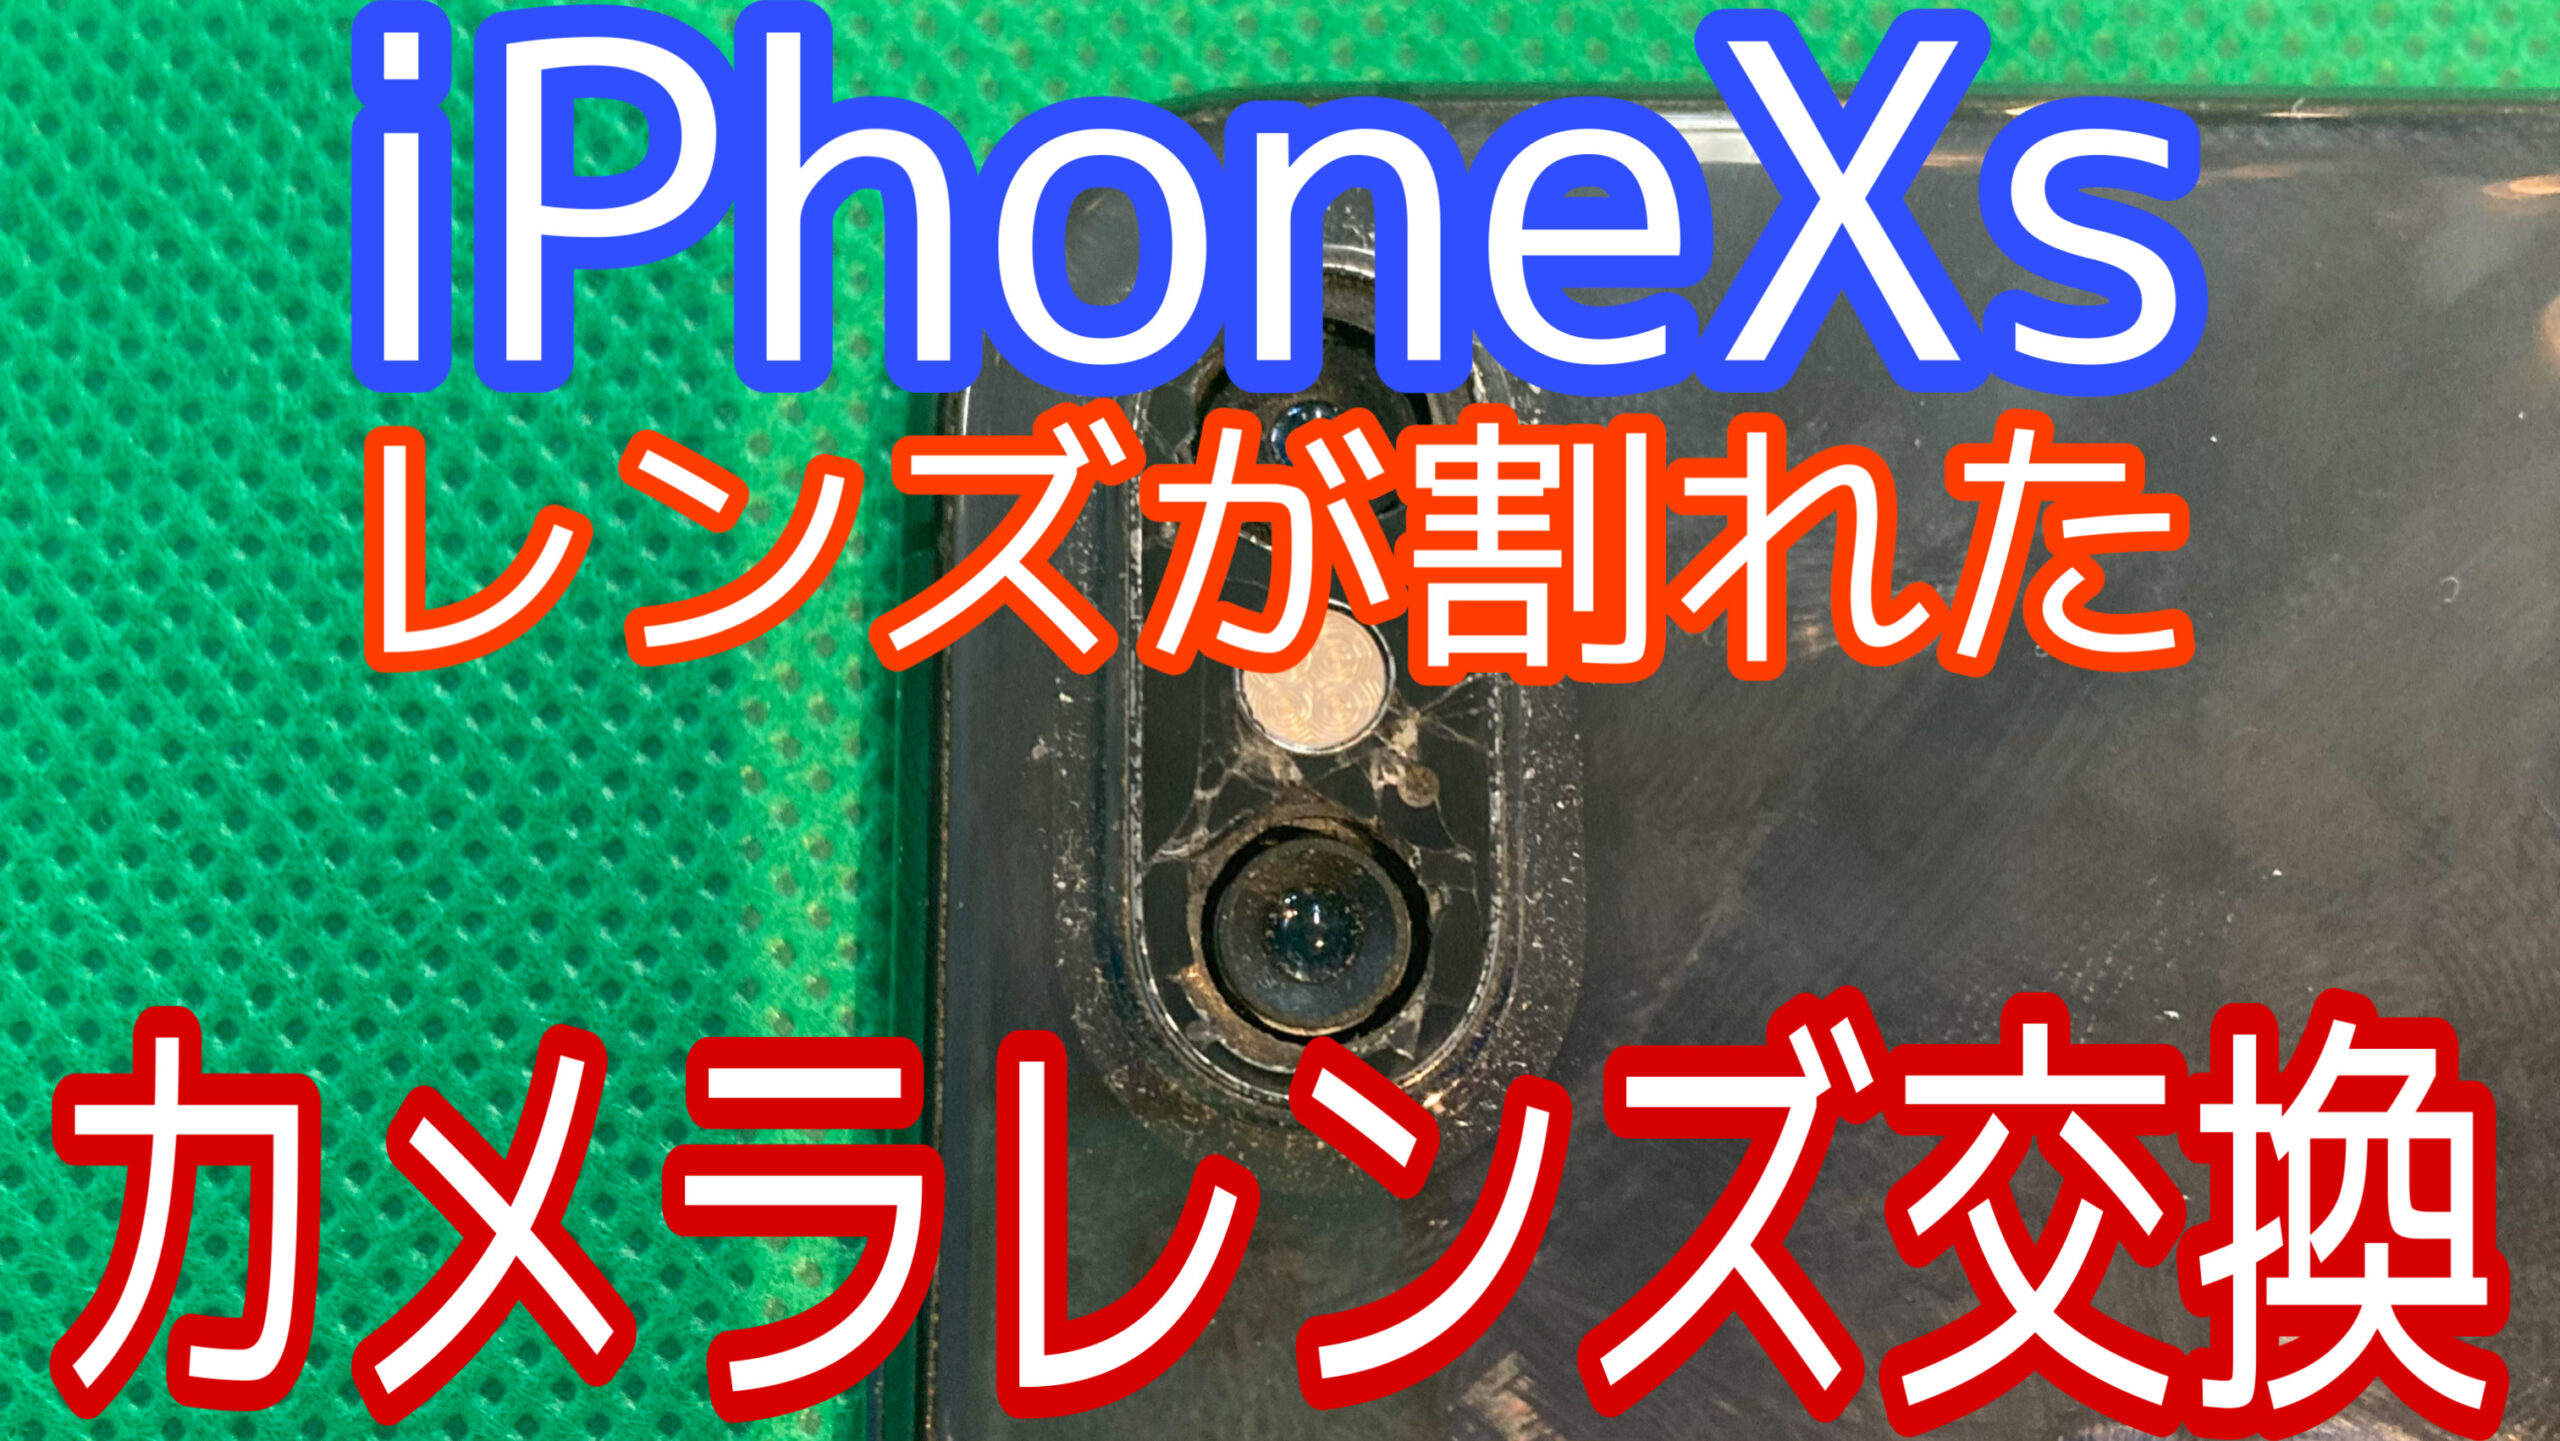 iPhoneXsアイキャッチ画像